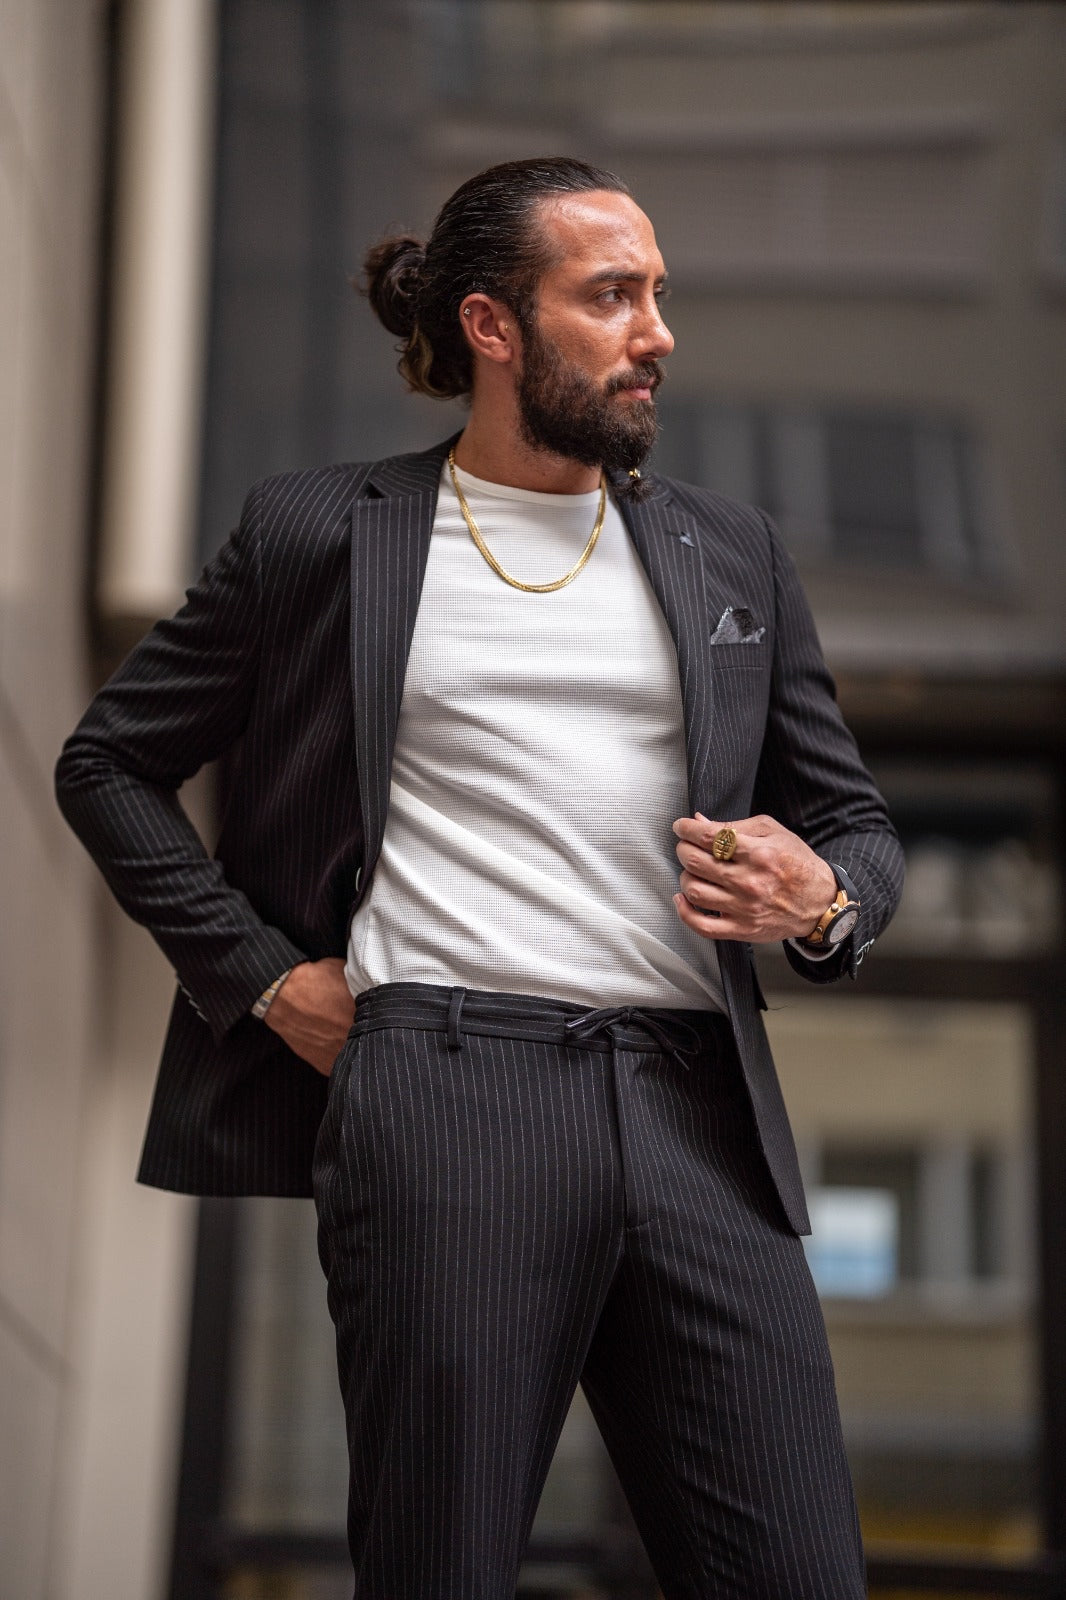 Ardean Black Slim Fit Notch Lapel 2 Piece Pinstripe Suit